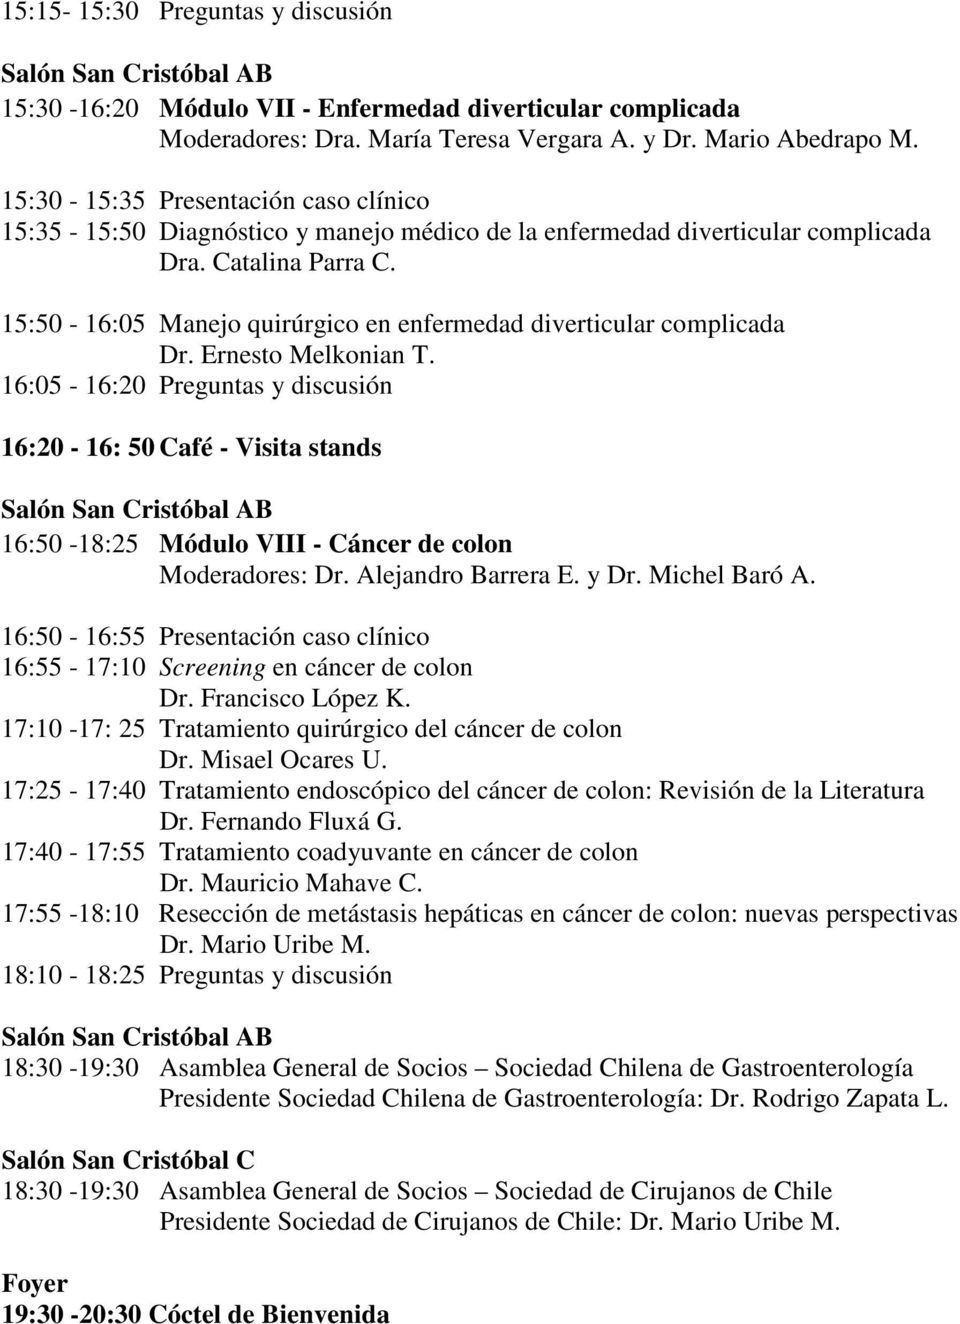 15:50-16:05 Manejo quirúrgico en enfermedad diverticular complicada Dr. Ernesto Melkonian T.